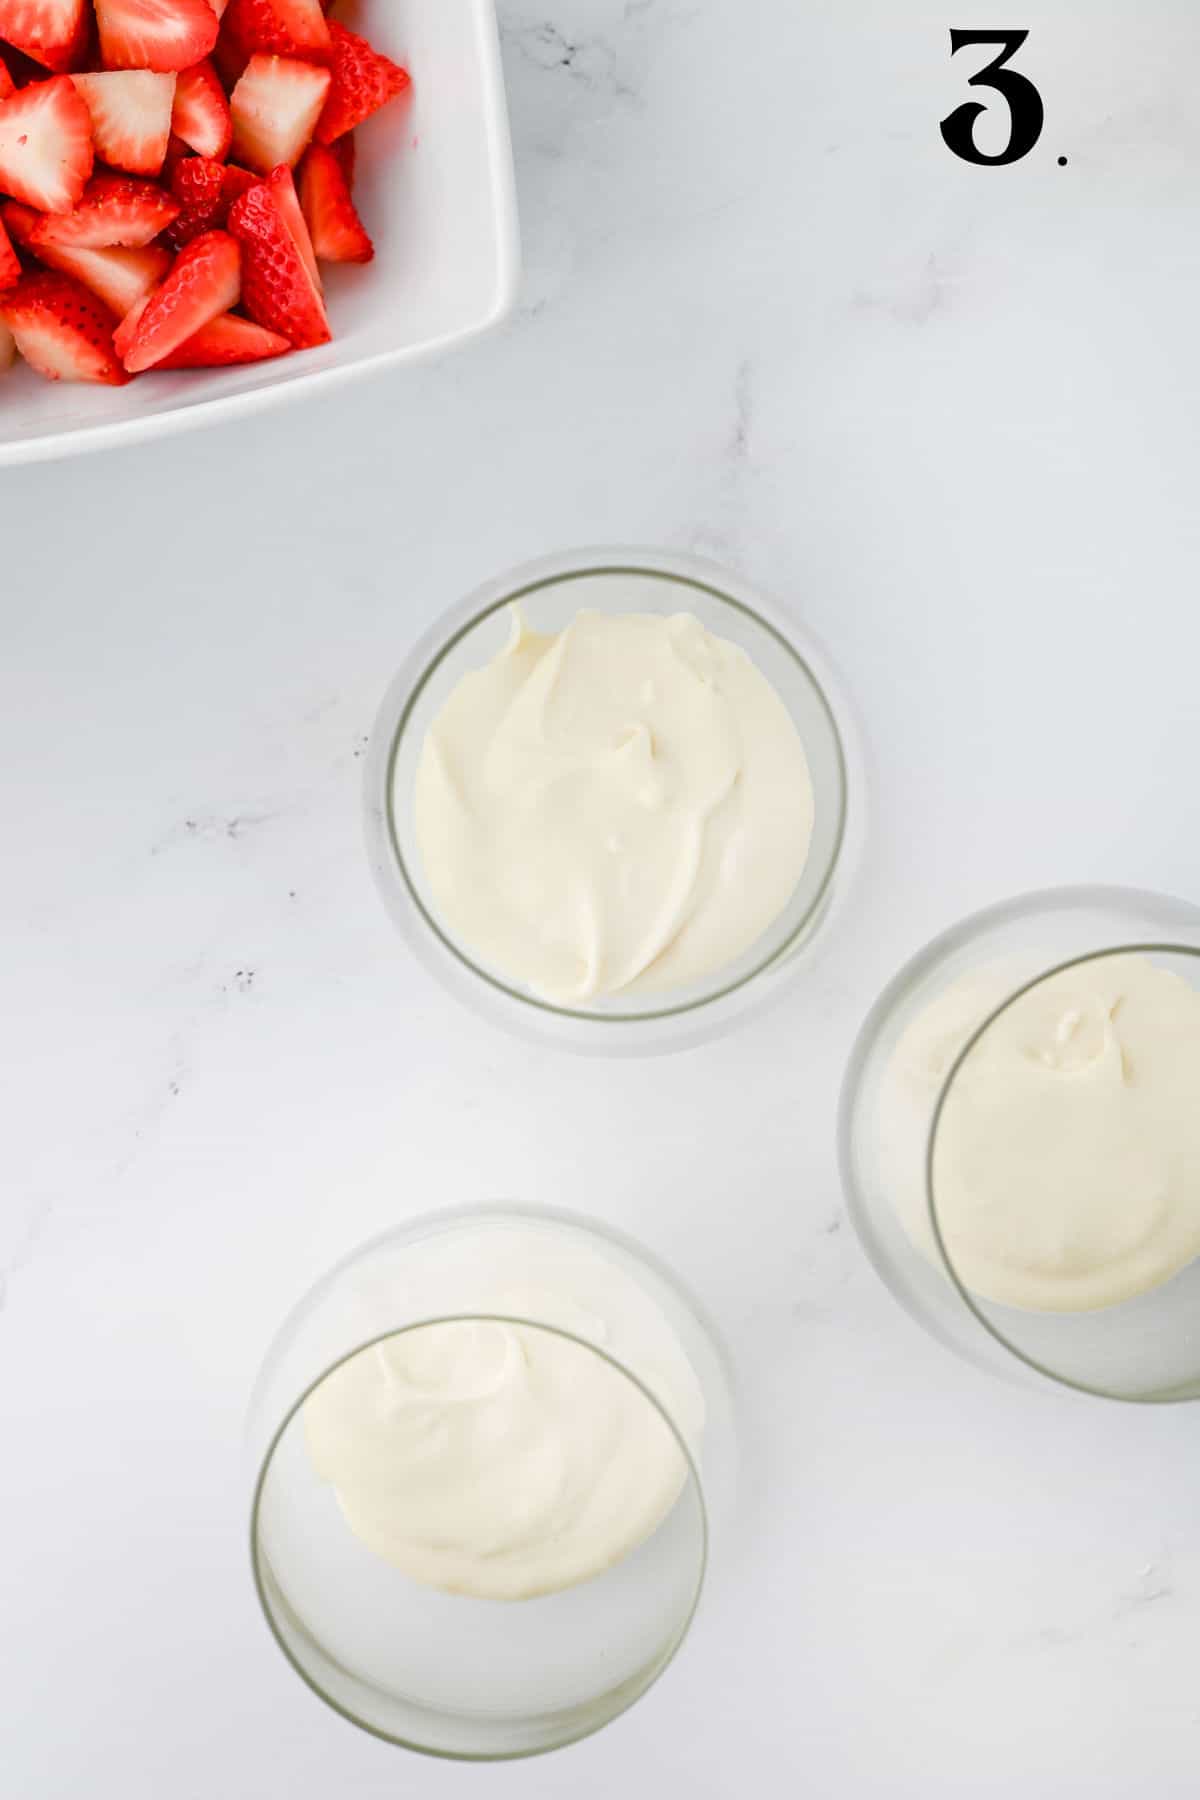 How to Make Strawberry Cheesecake Parfaits - Step 3 adding cream layer.